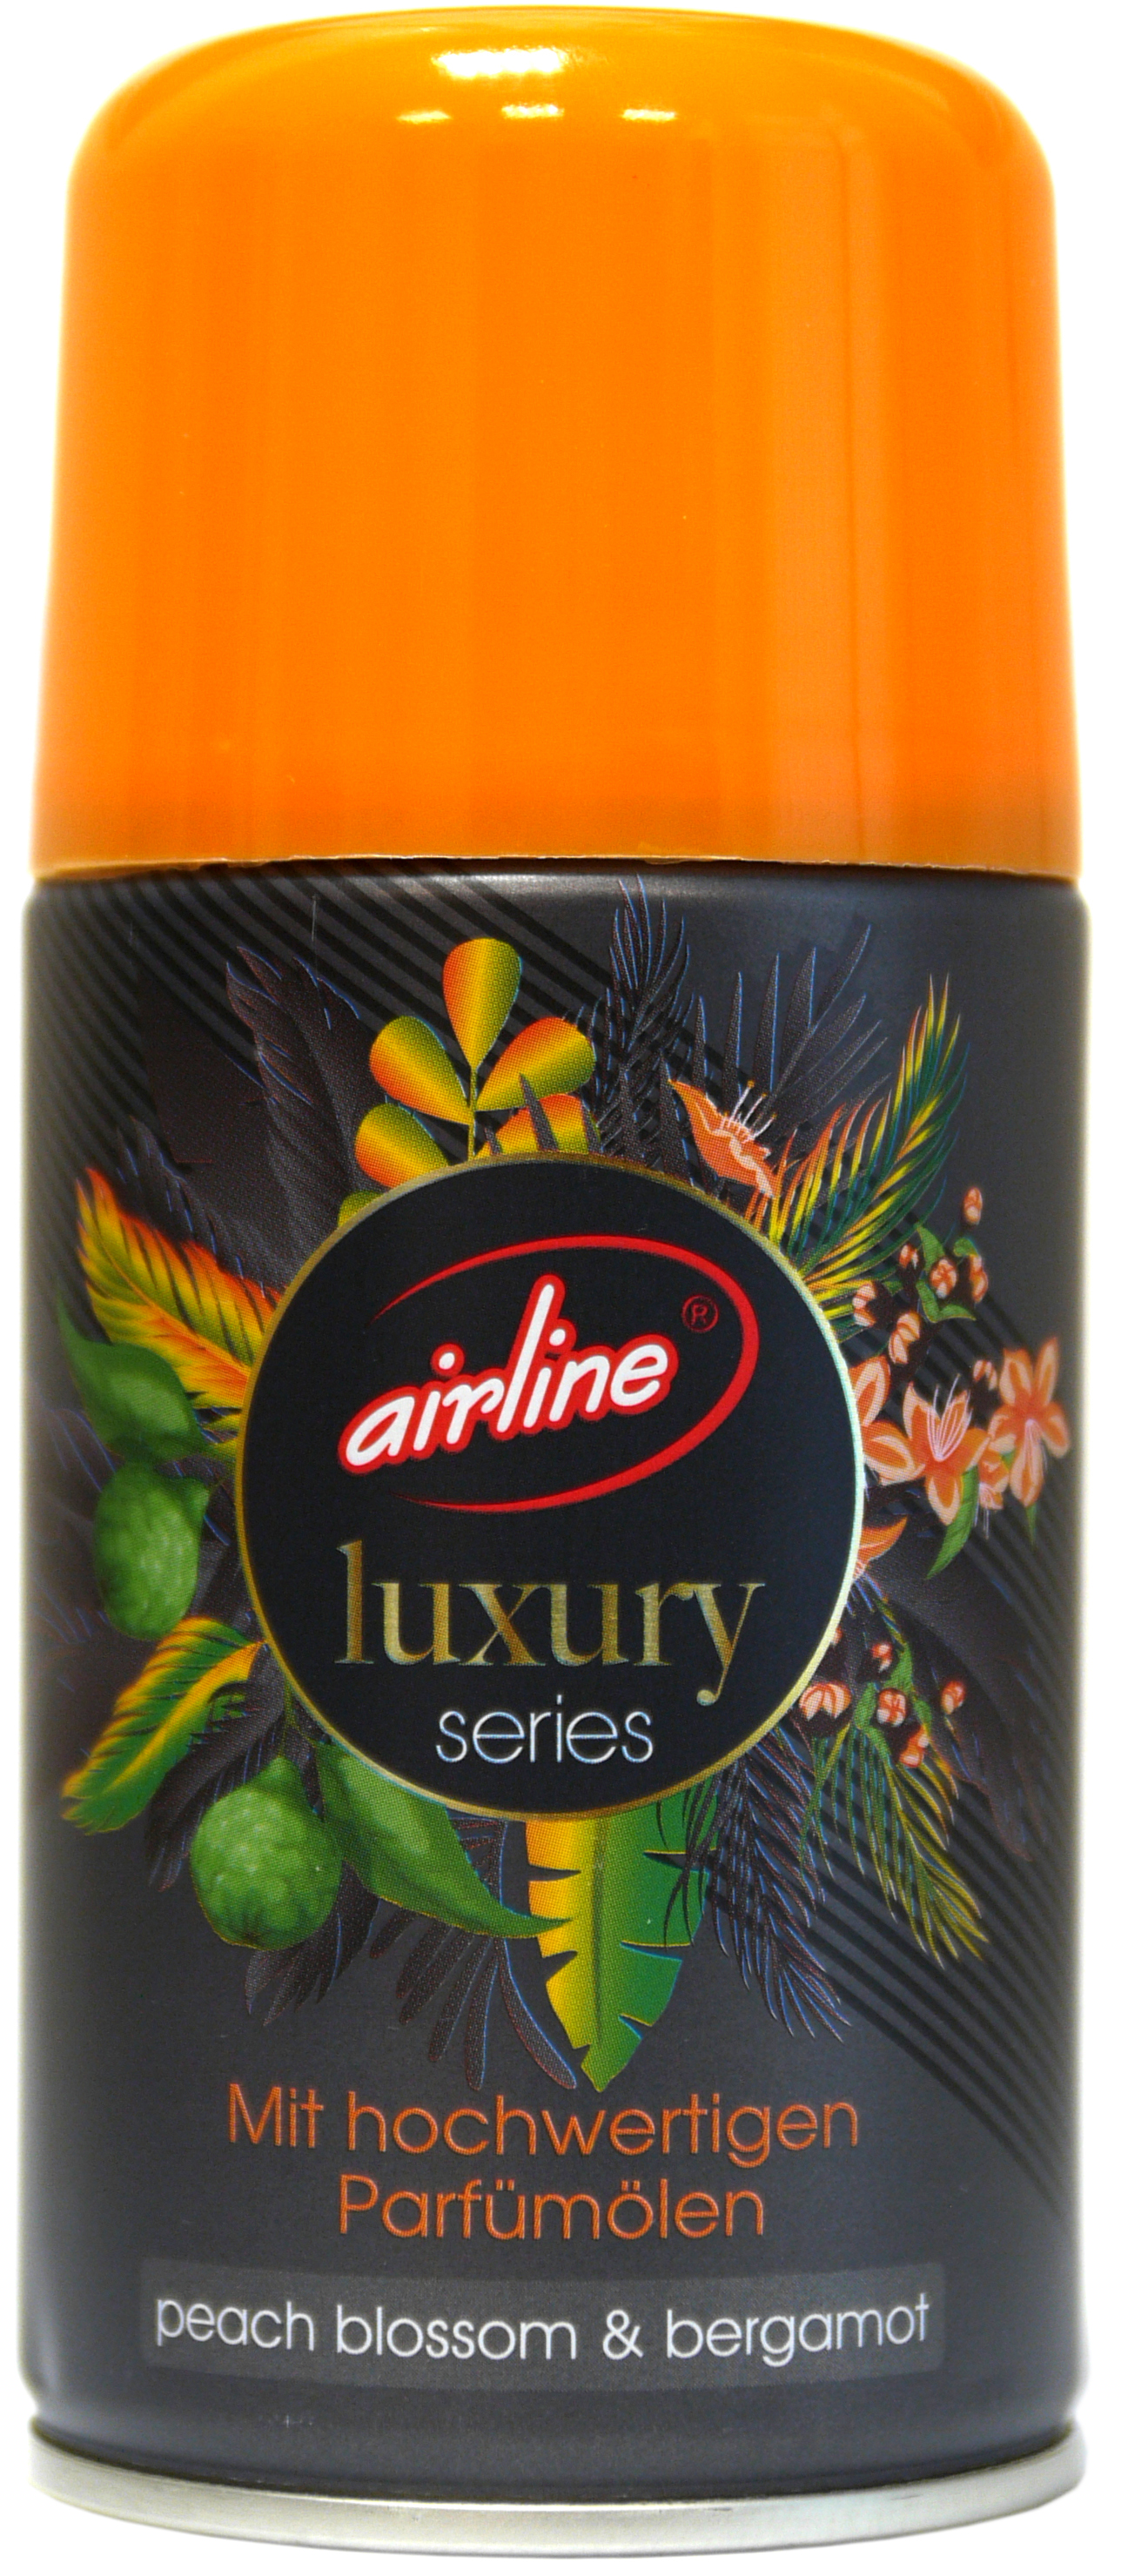 00523 - airline Luxury Series peach blossom & bergamot Nachfüllkartusche 250 ml